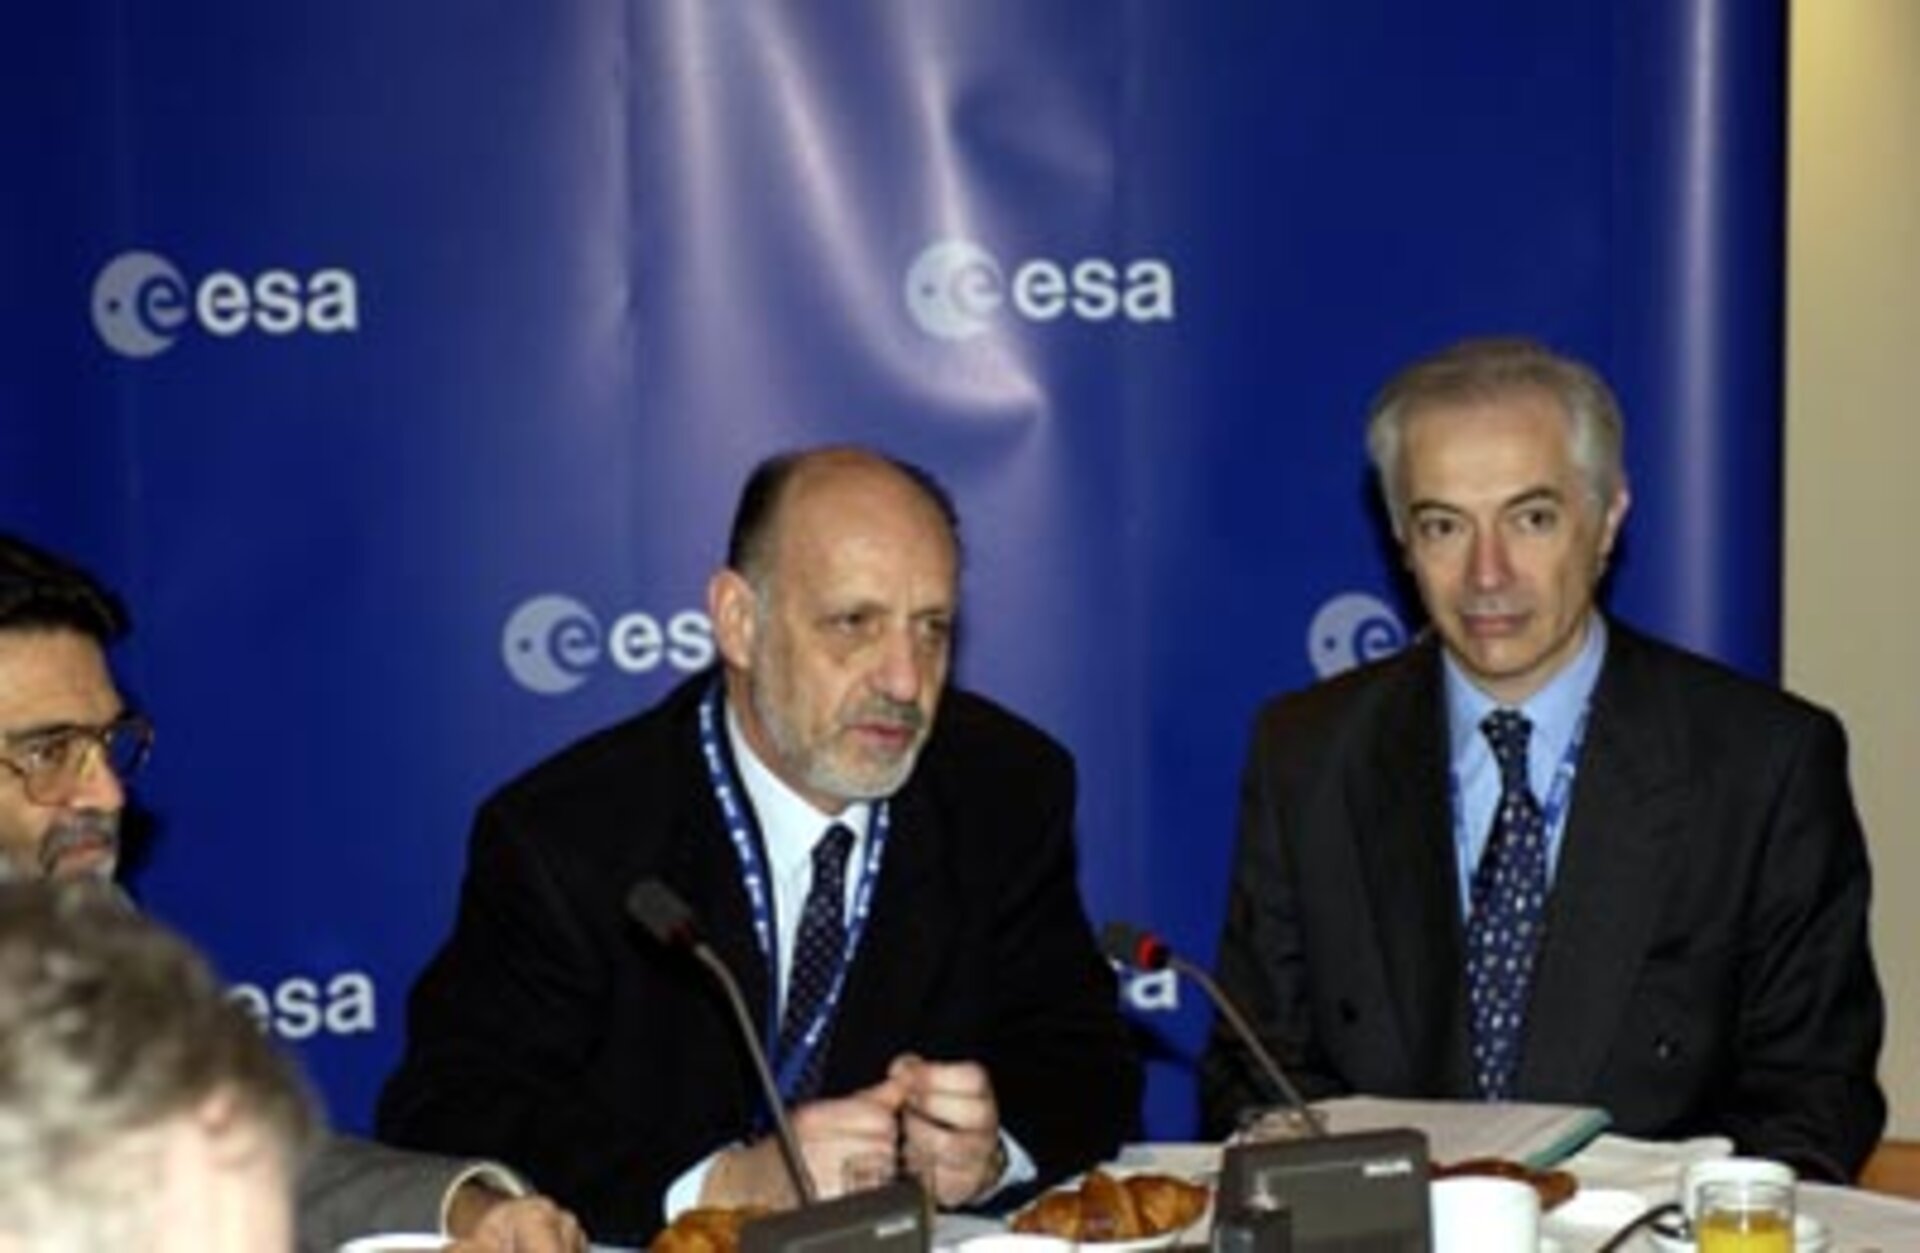 ESA's Director General Antonio Rodotà